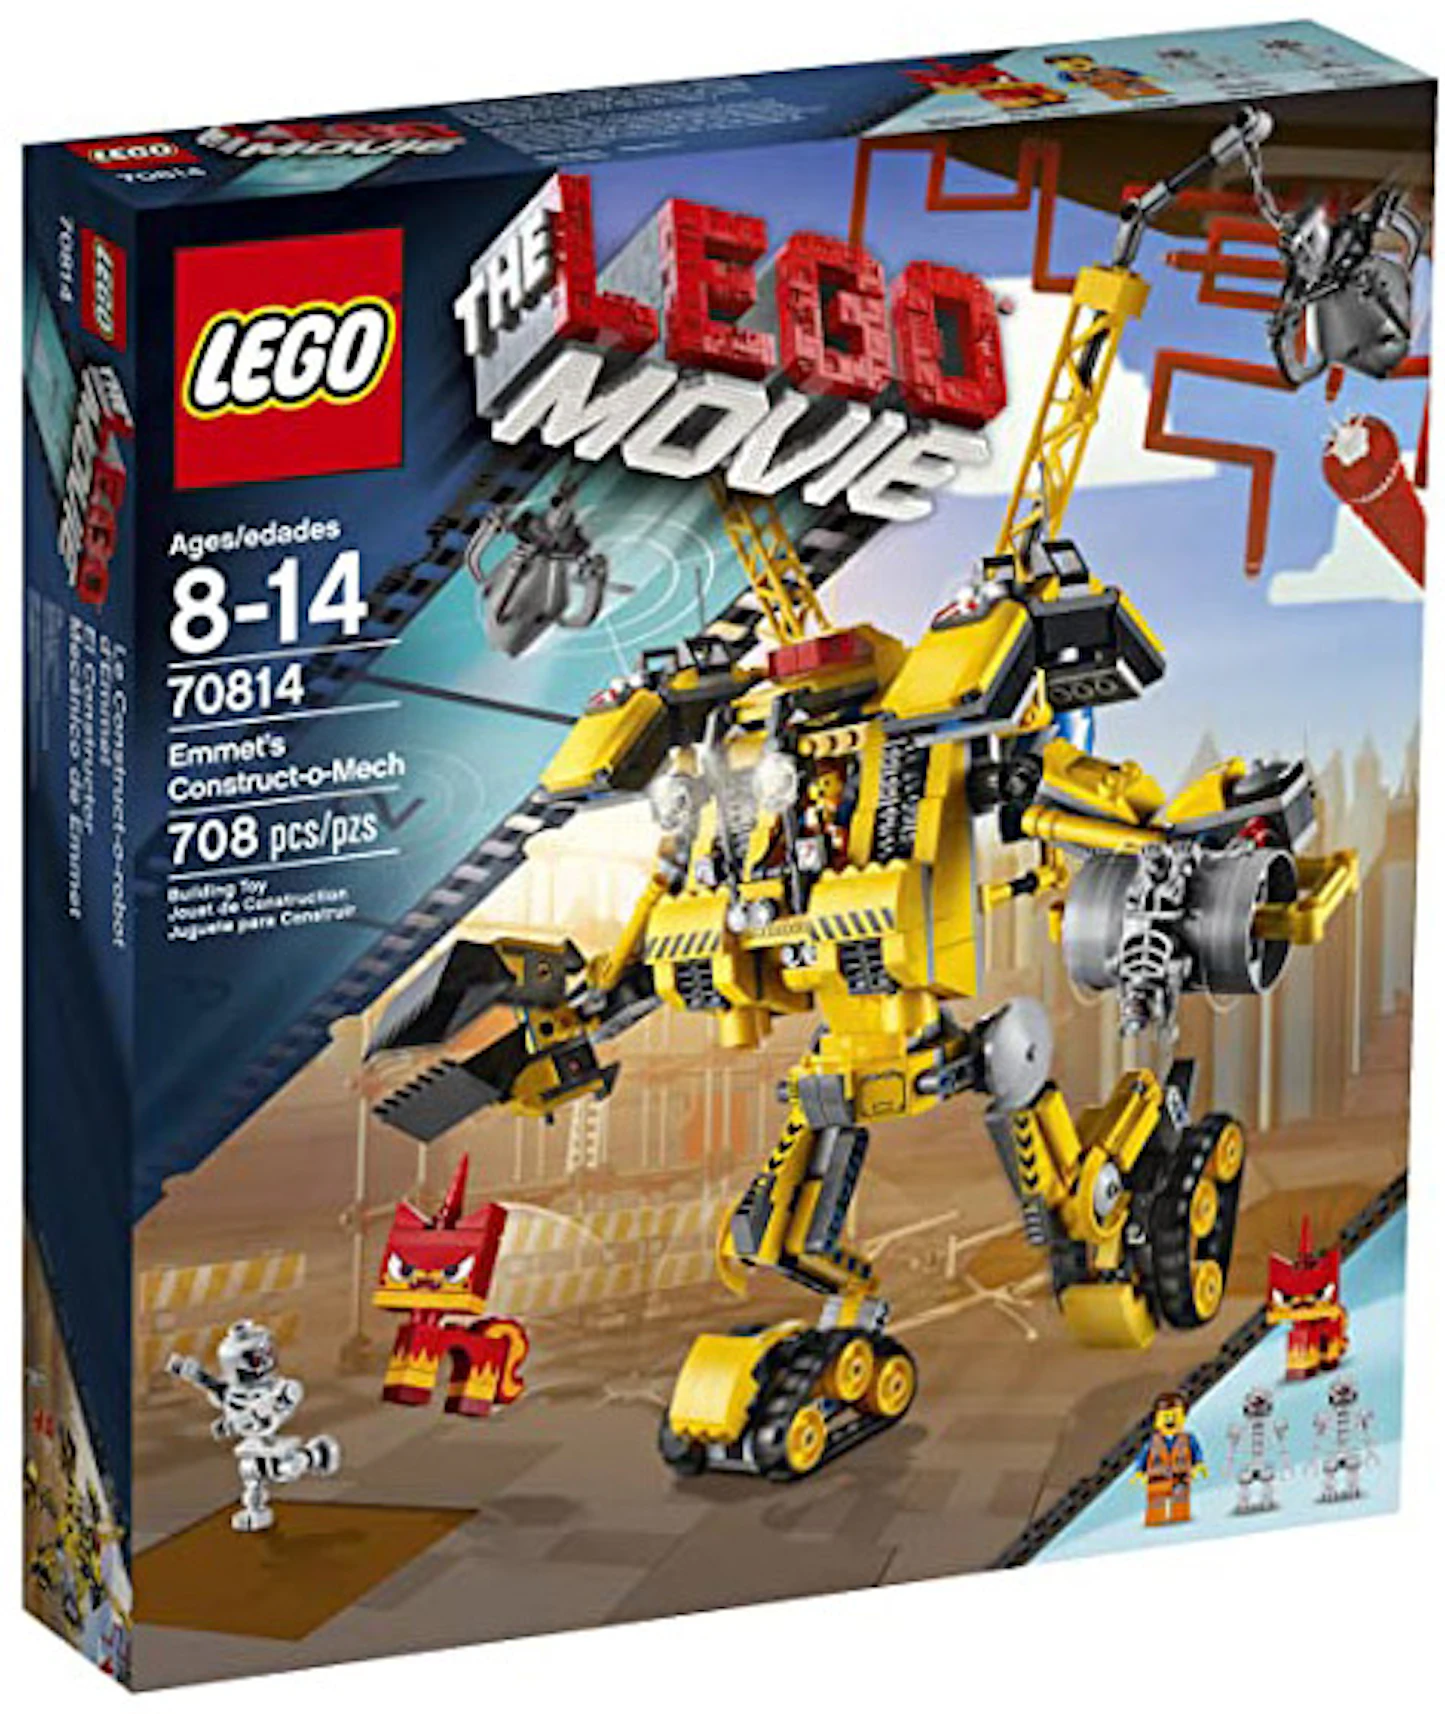 kader gen Buskruit LEGO The LEGO Movie Emmet's Construct-o-Mech Set 70814 - US